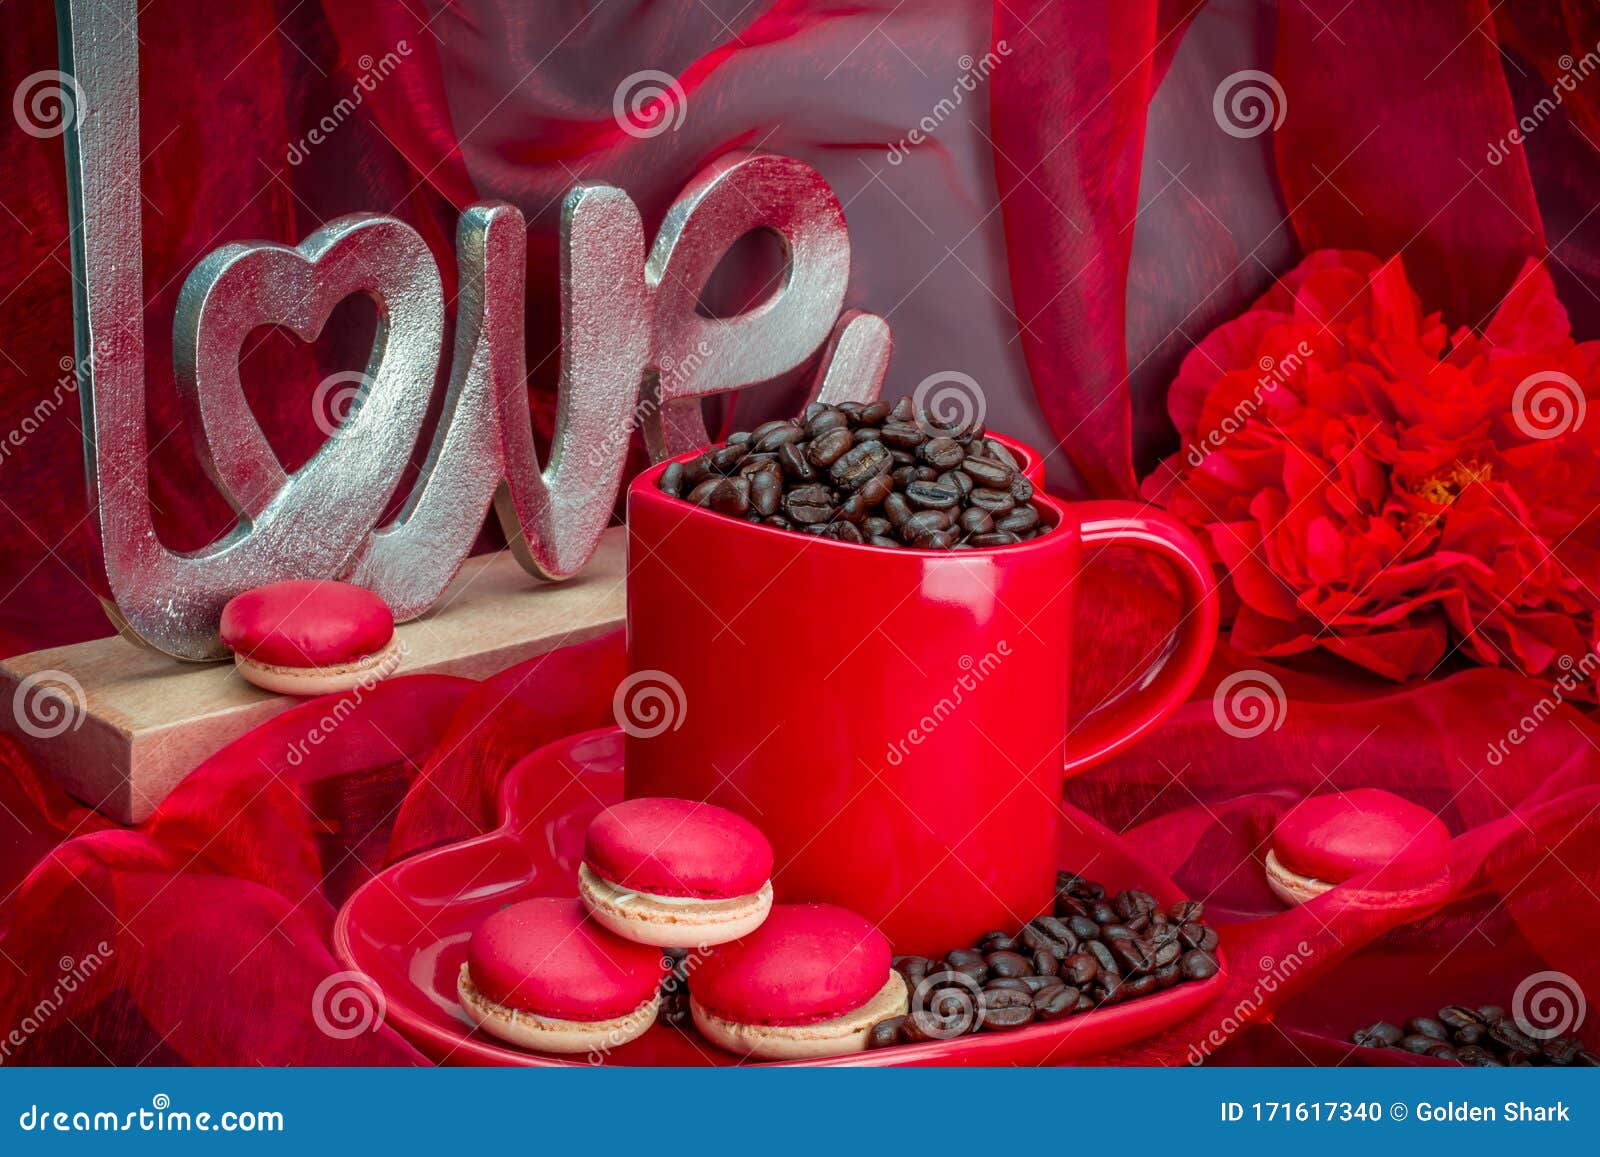 红杯子 配黑褐色精纺咖啡豆 性感的红色背景和情书库存照片 图片包括有红杯子 配黑褐色精纺咖啡豆 性感的红色背景和情书